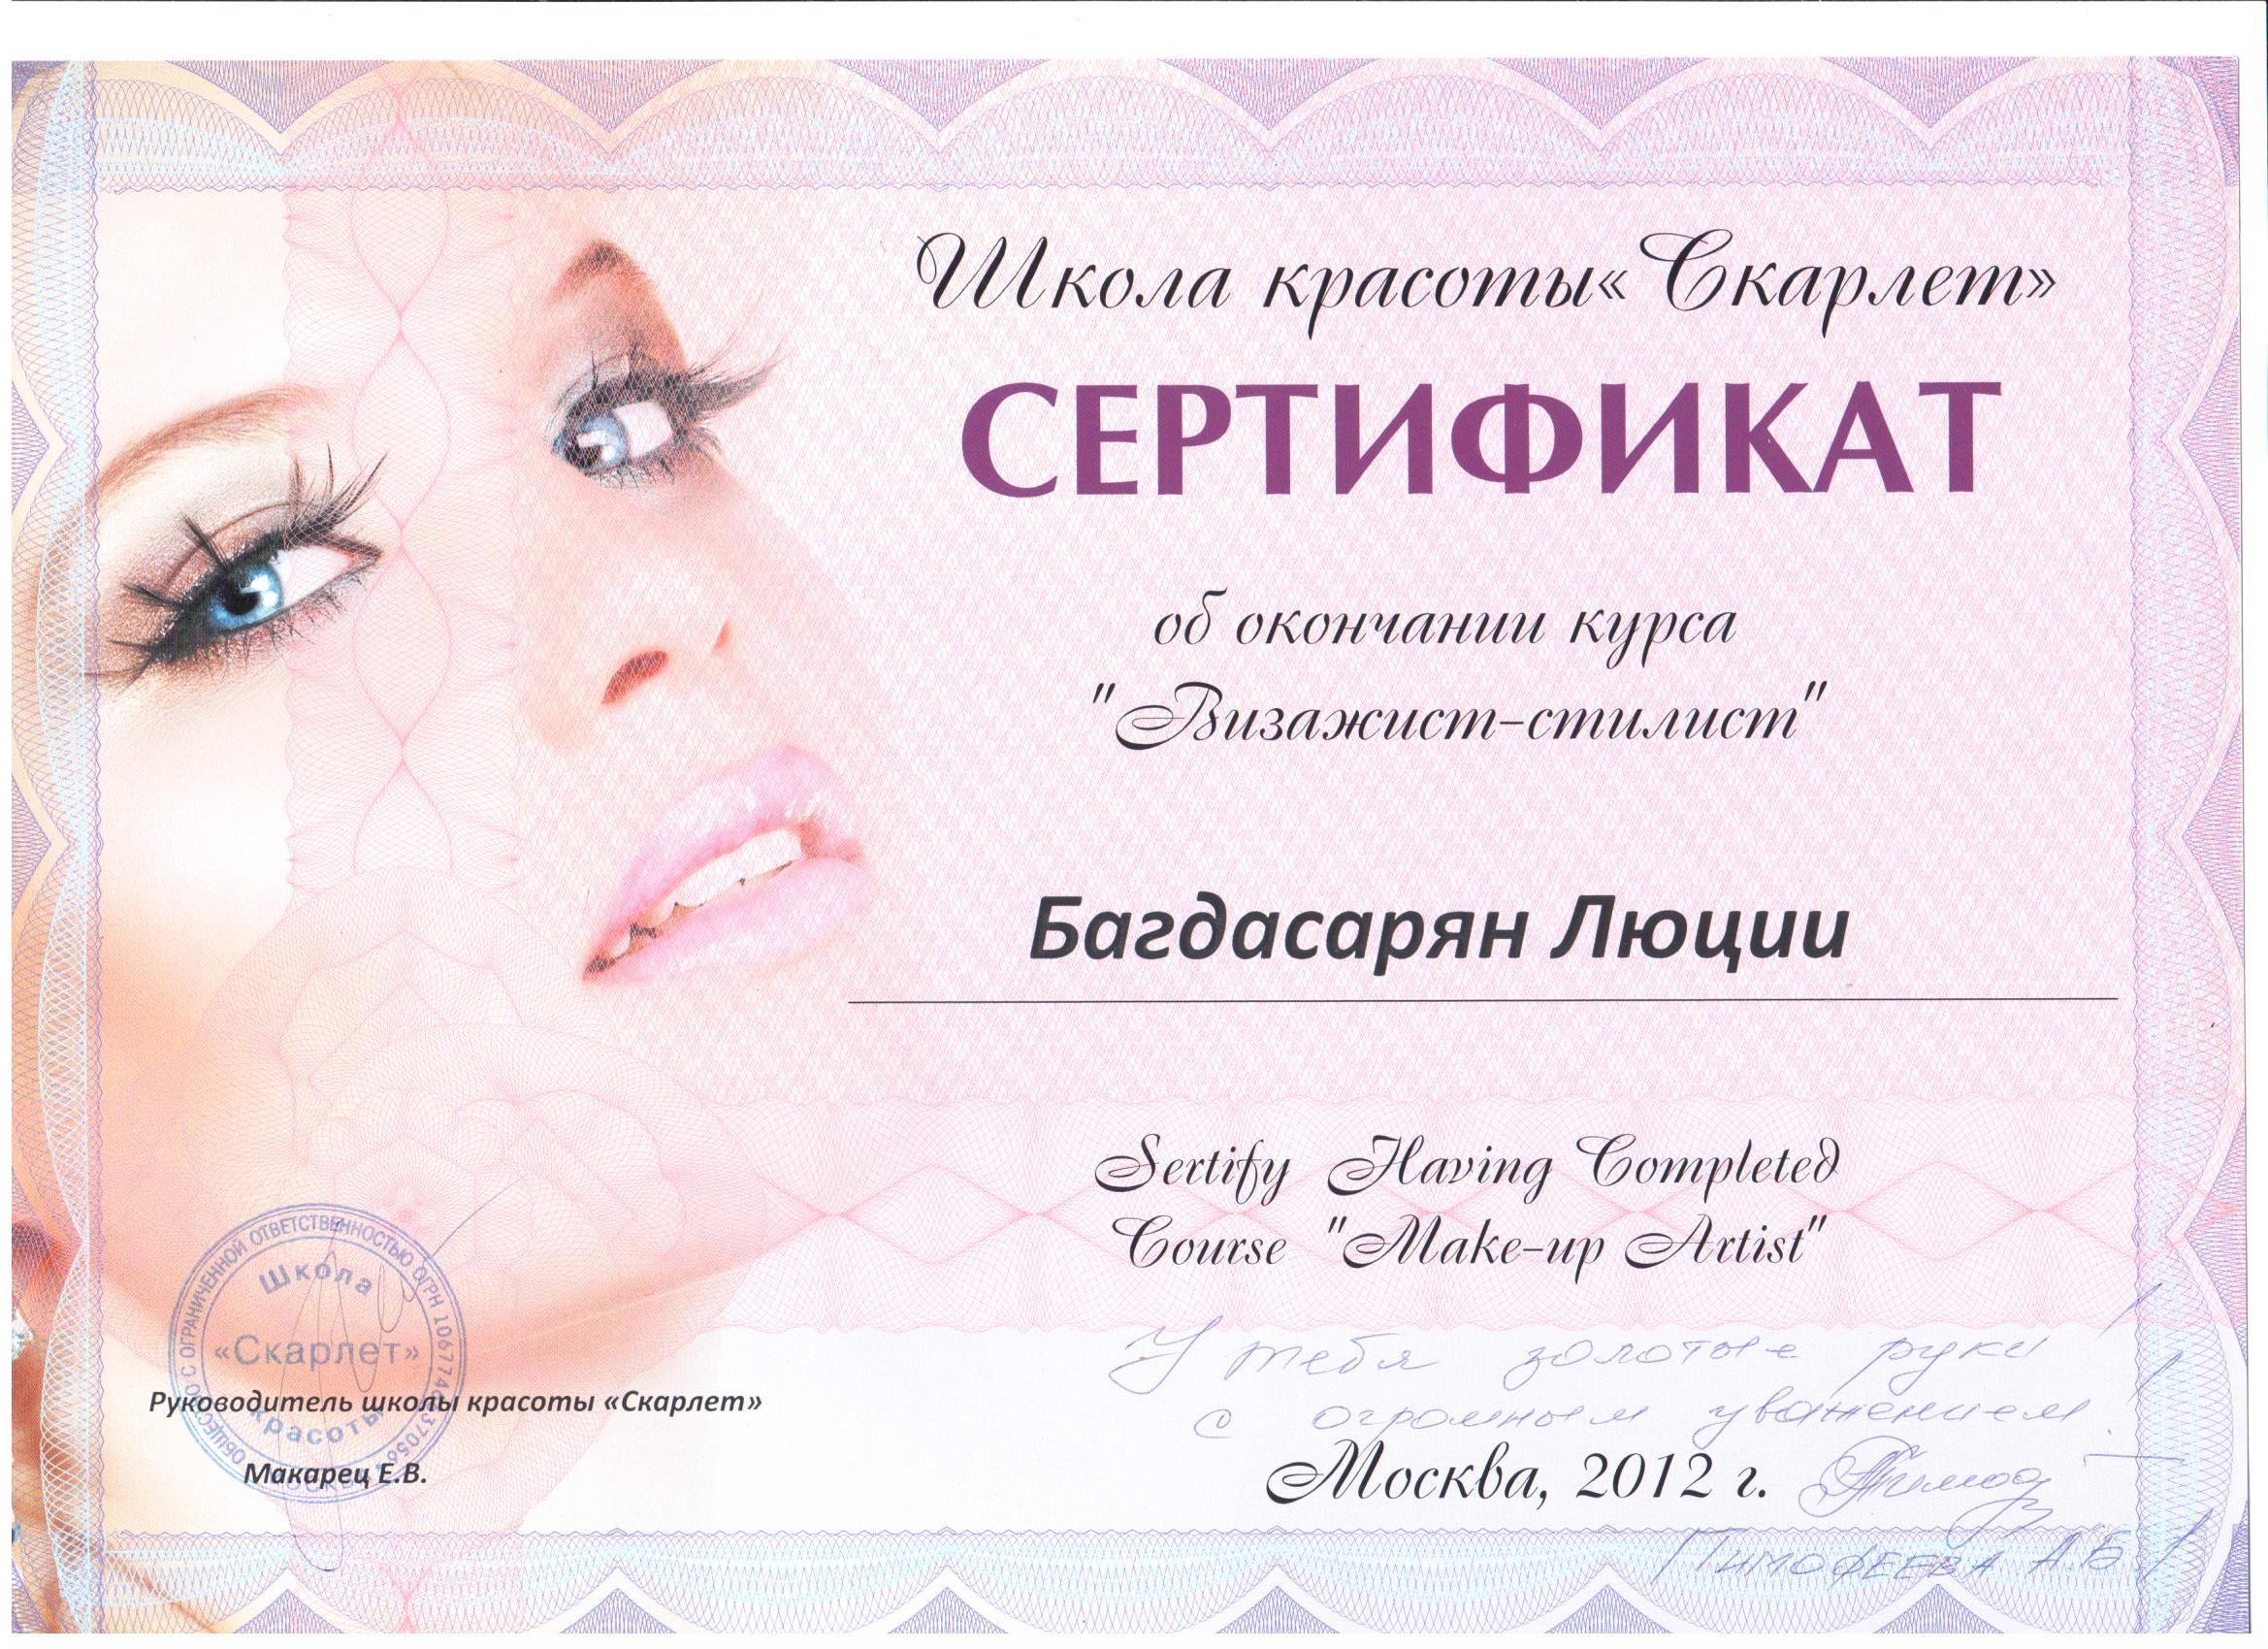 Сертификат визажиста. Курсы макияжа сертификатом